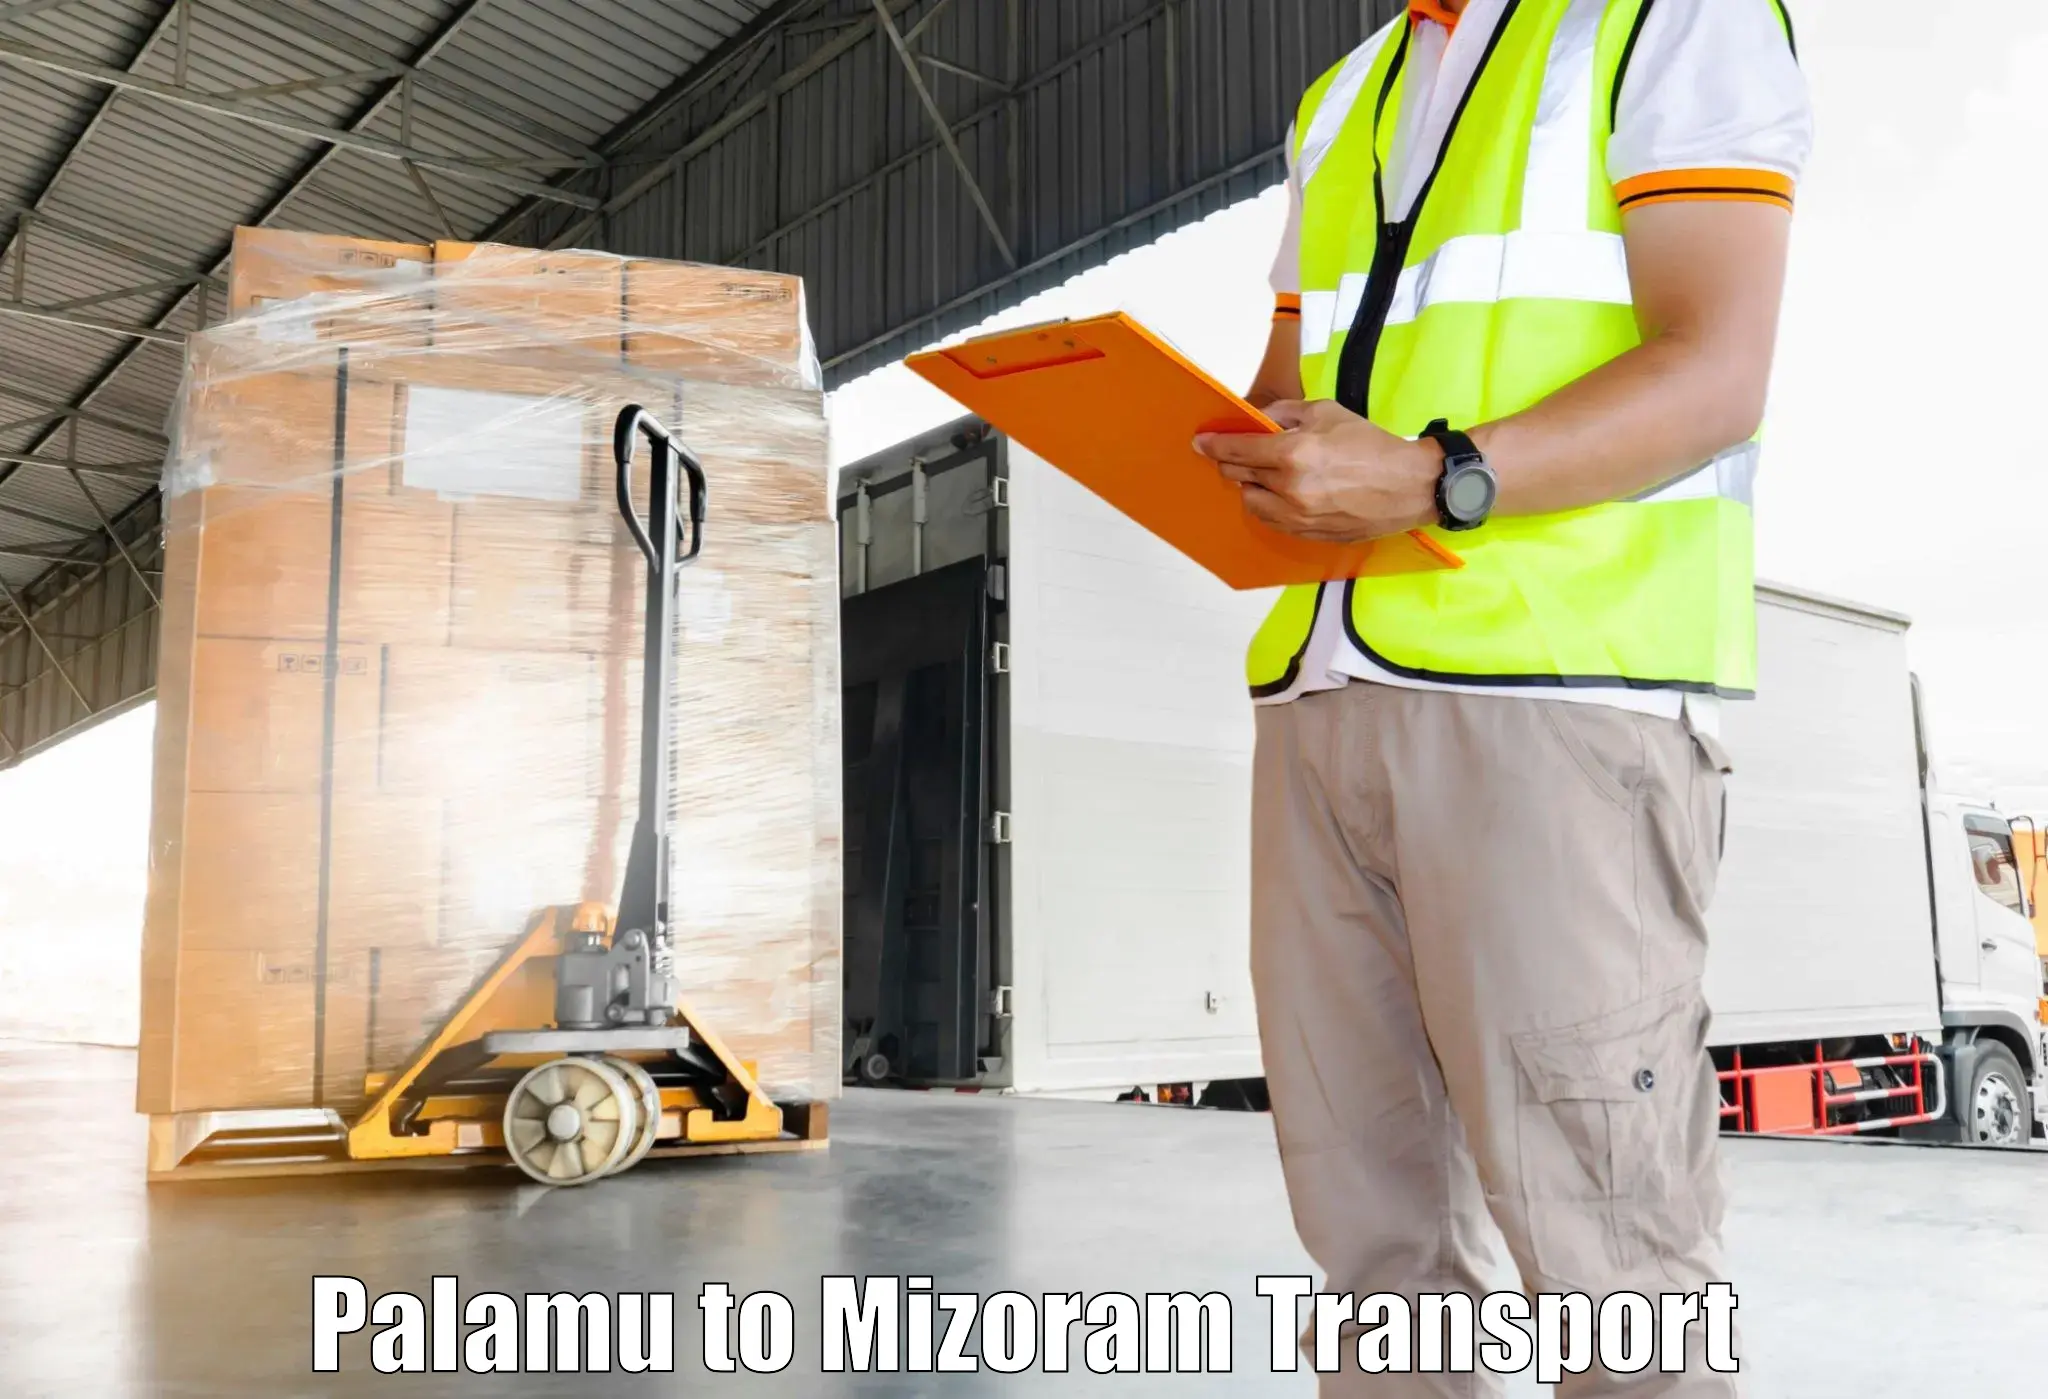 Online transport booking Palamu to Mizoram